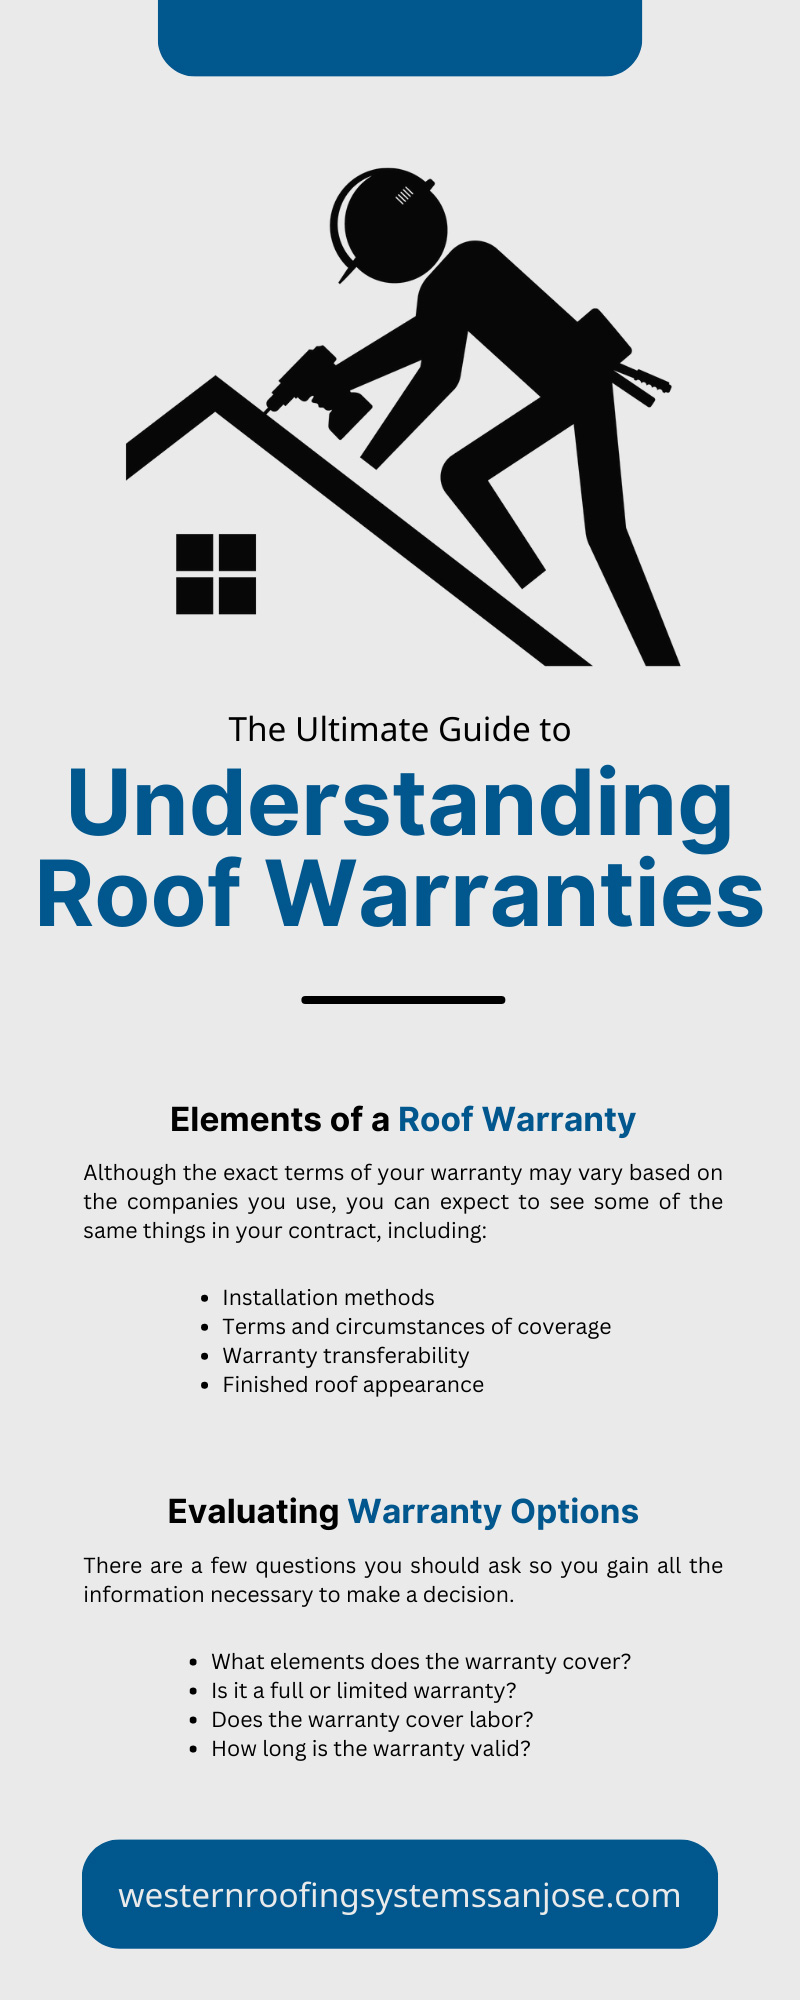 The Ultimate Guide to Understanding Roof Warranties